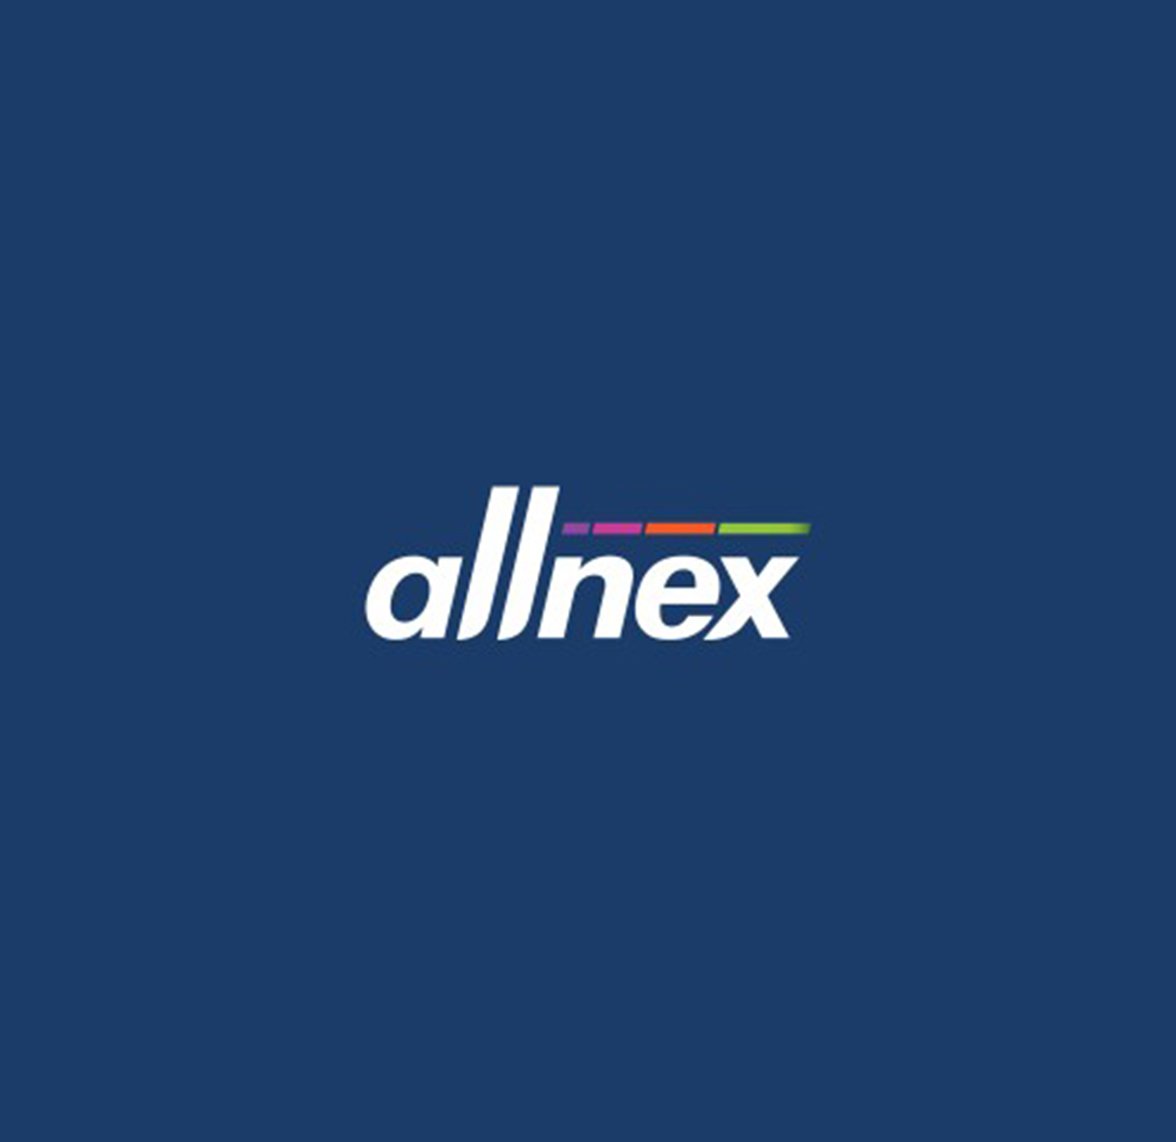 Allnex Management GmbH: Aktualisierung des Präsentationsdesigns